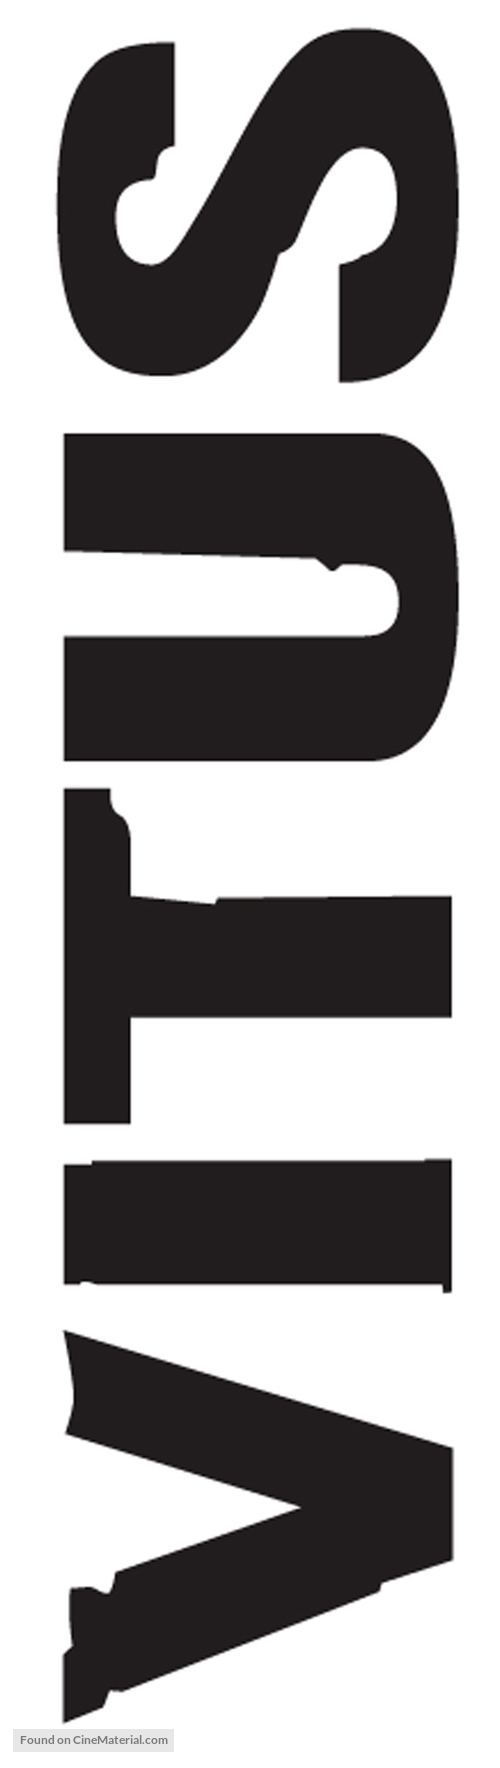 Vitus - Logo